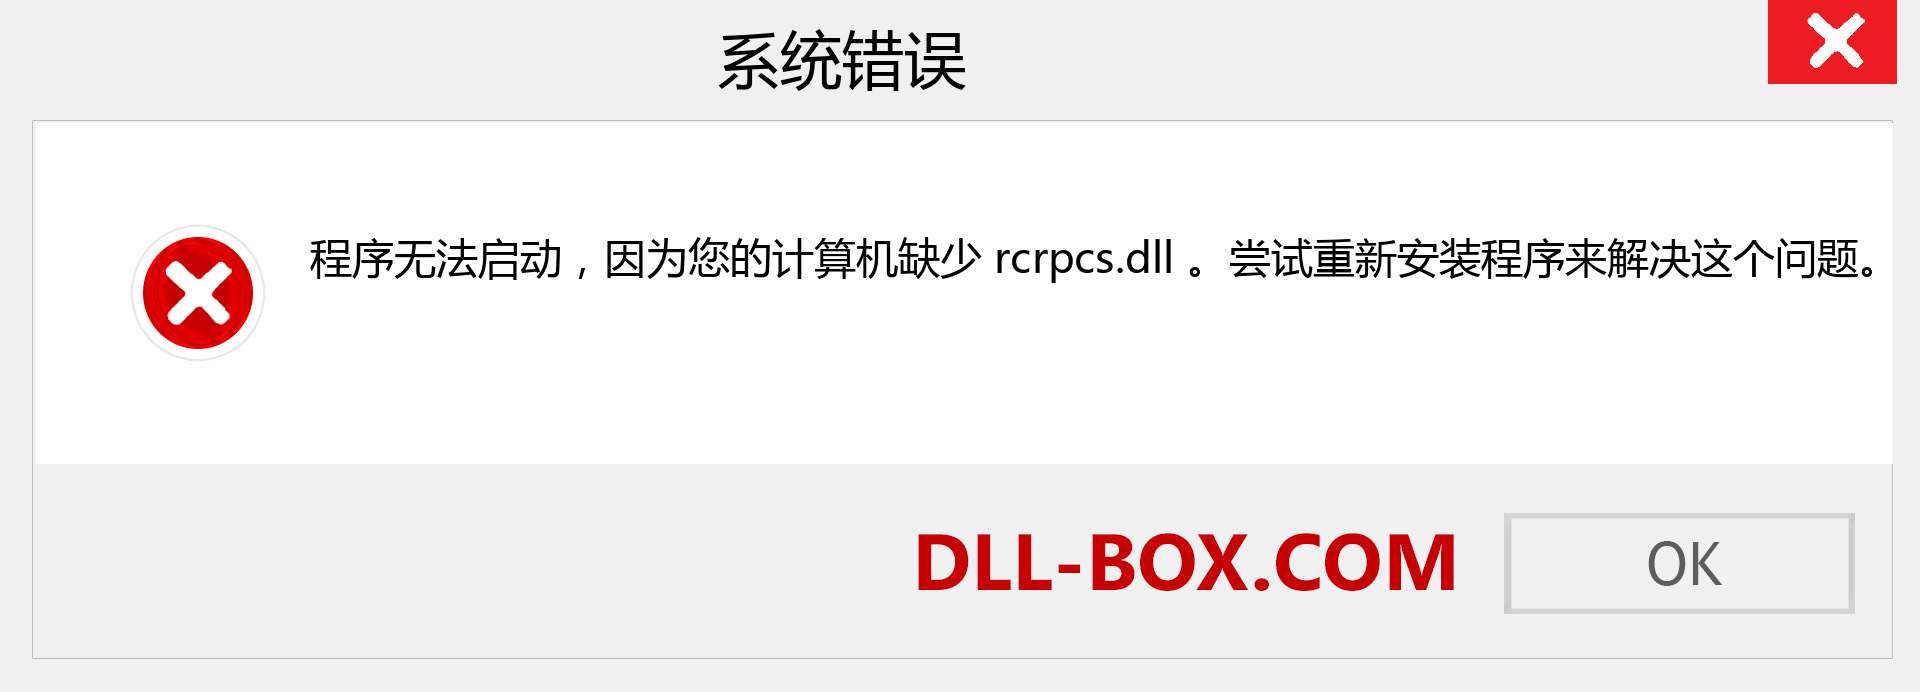 rcrpcs.dll 文件丢失？。 适用于 Windows 7、8、10 的下载 - 修复 Windows、照片、图像上的 rcrpcs dll 丢失错误